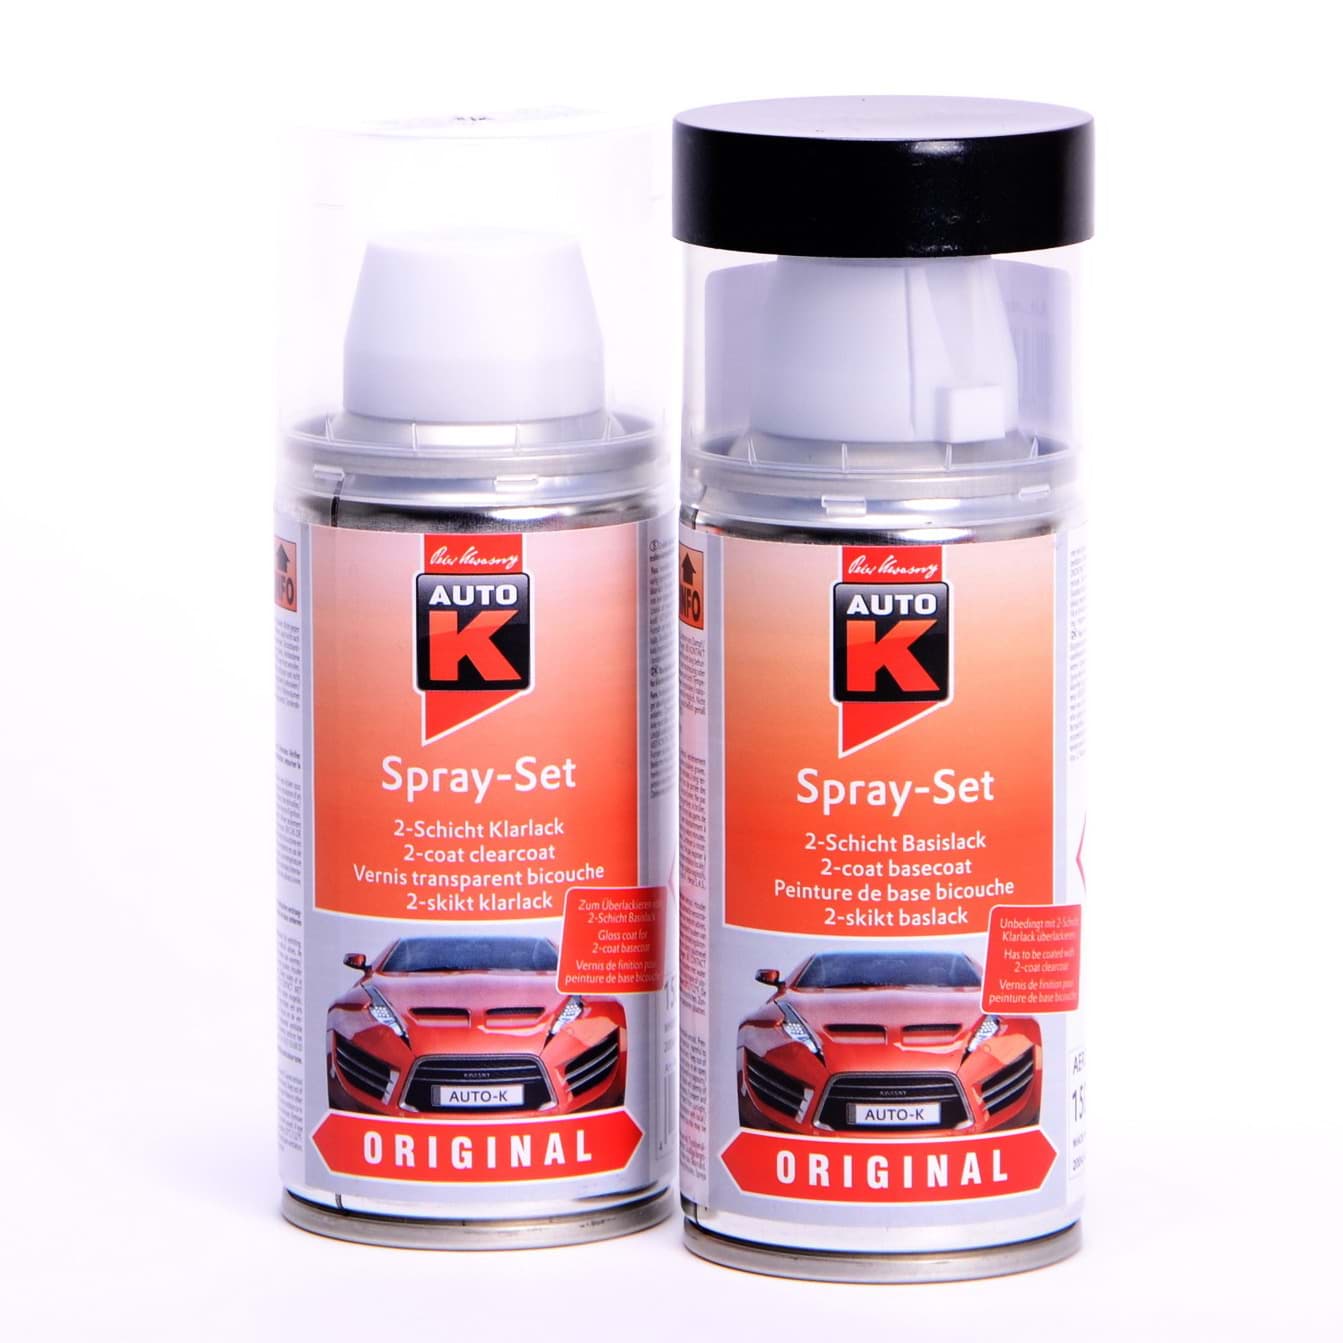 Afbeelding van Auto-K Spray-Set Autolack für Volkswagen, VW, Audi LW5Z Jazzblue perl met 20789